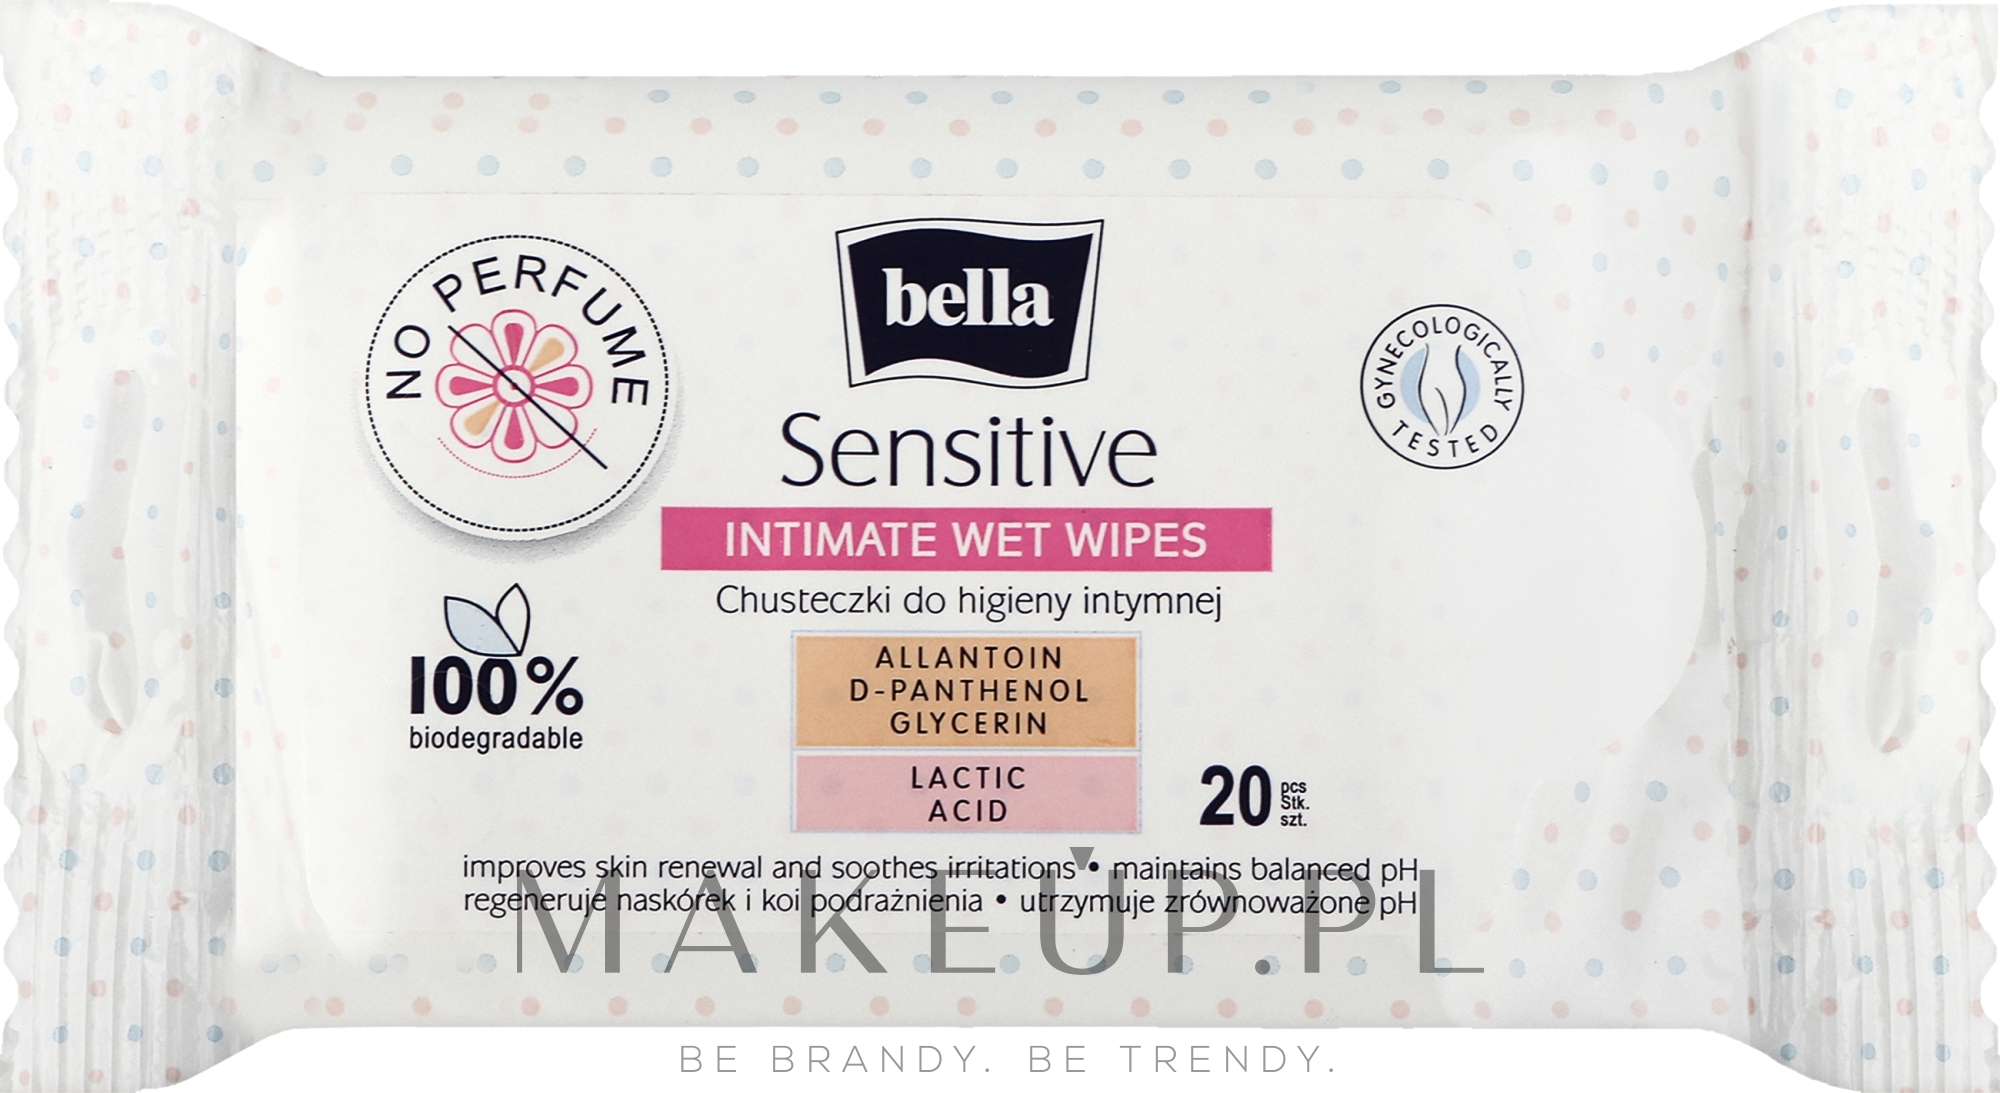 Chusteczki do higieny intymnej, 20 szt. - Bella Sensitive Intimate Wet Wipes — Zdjęcie 20 szt.